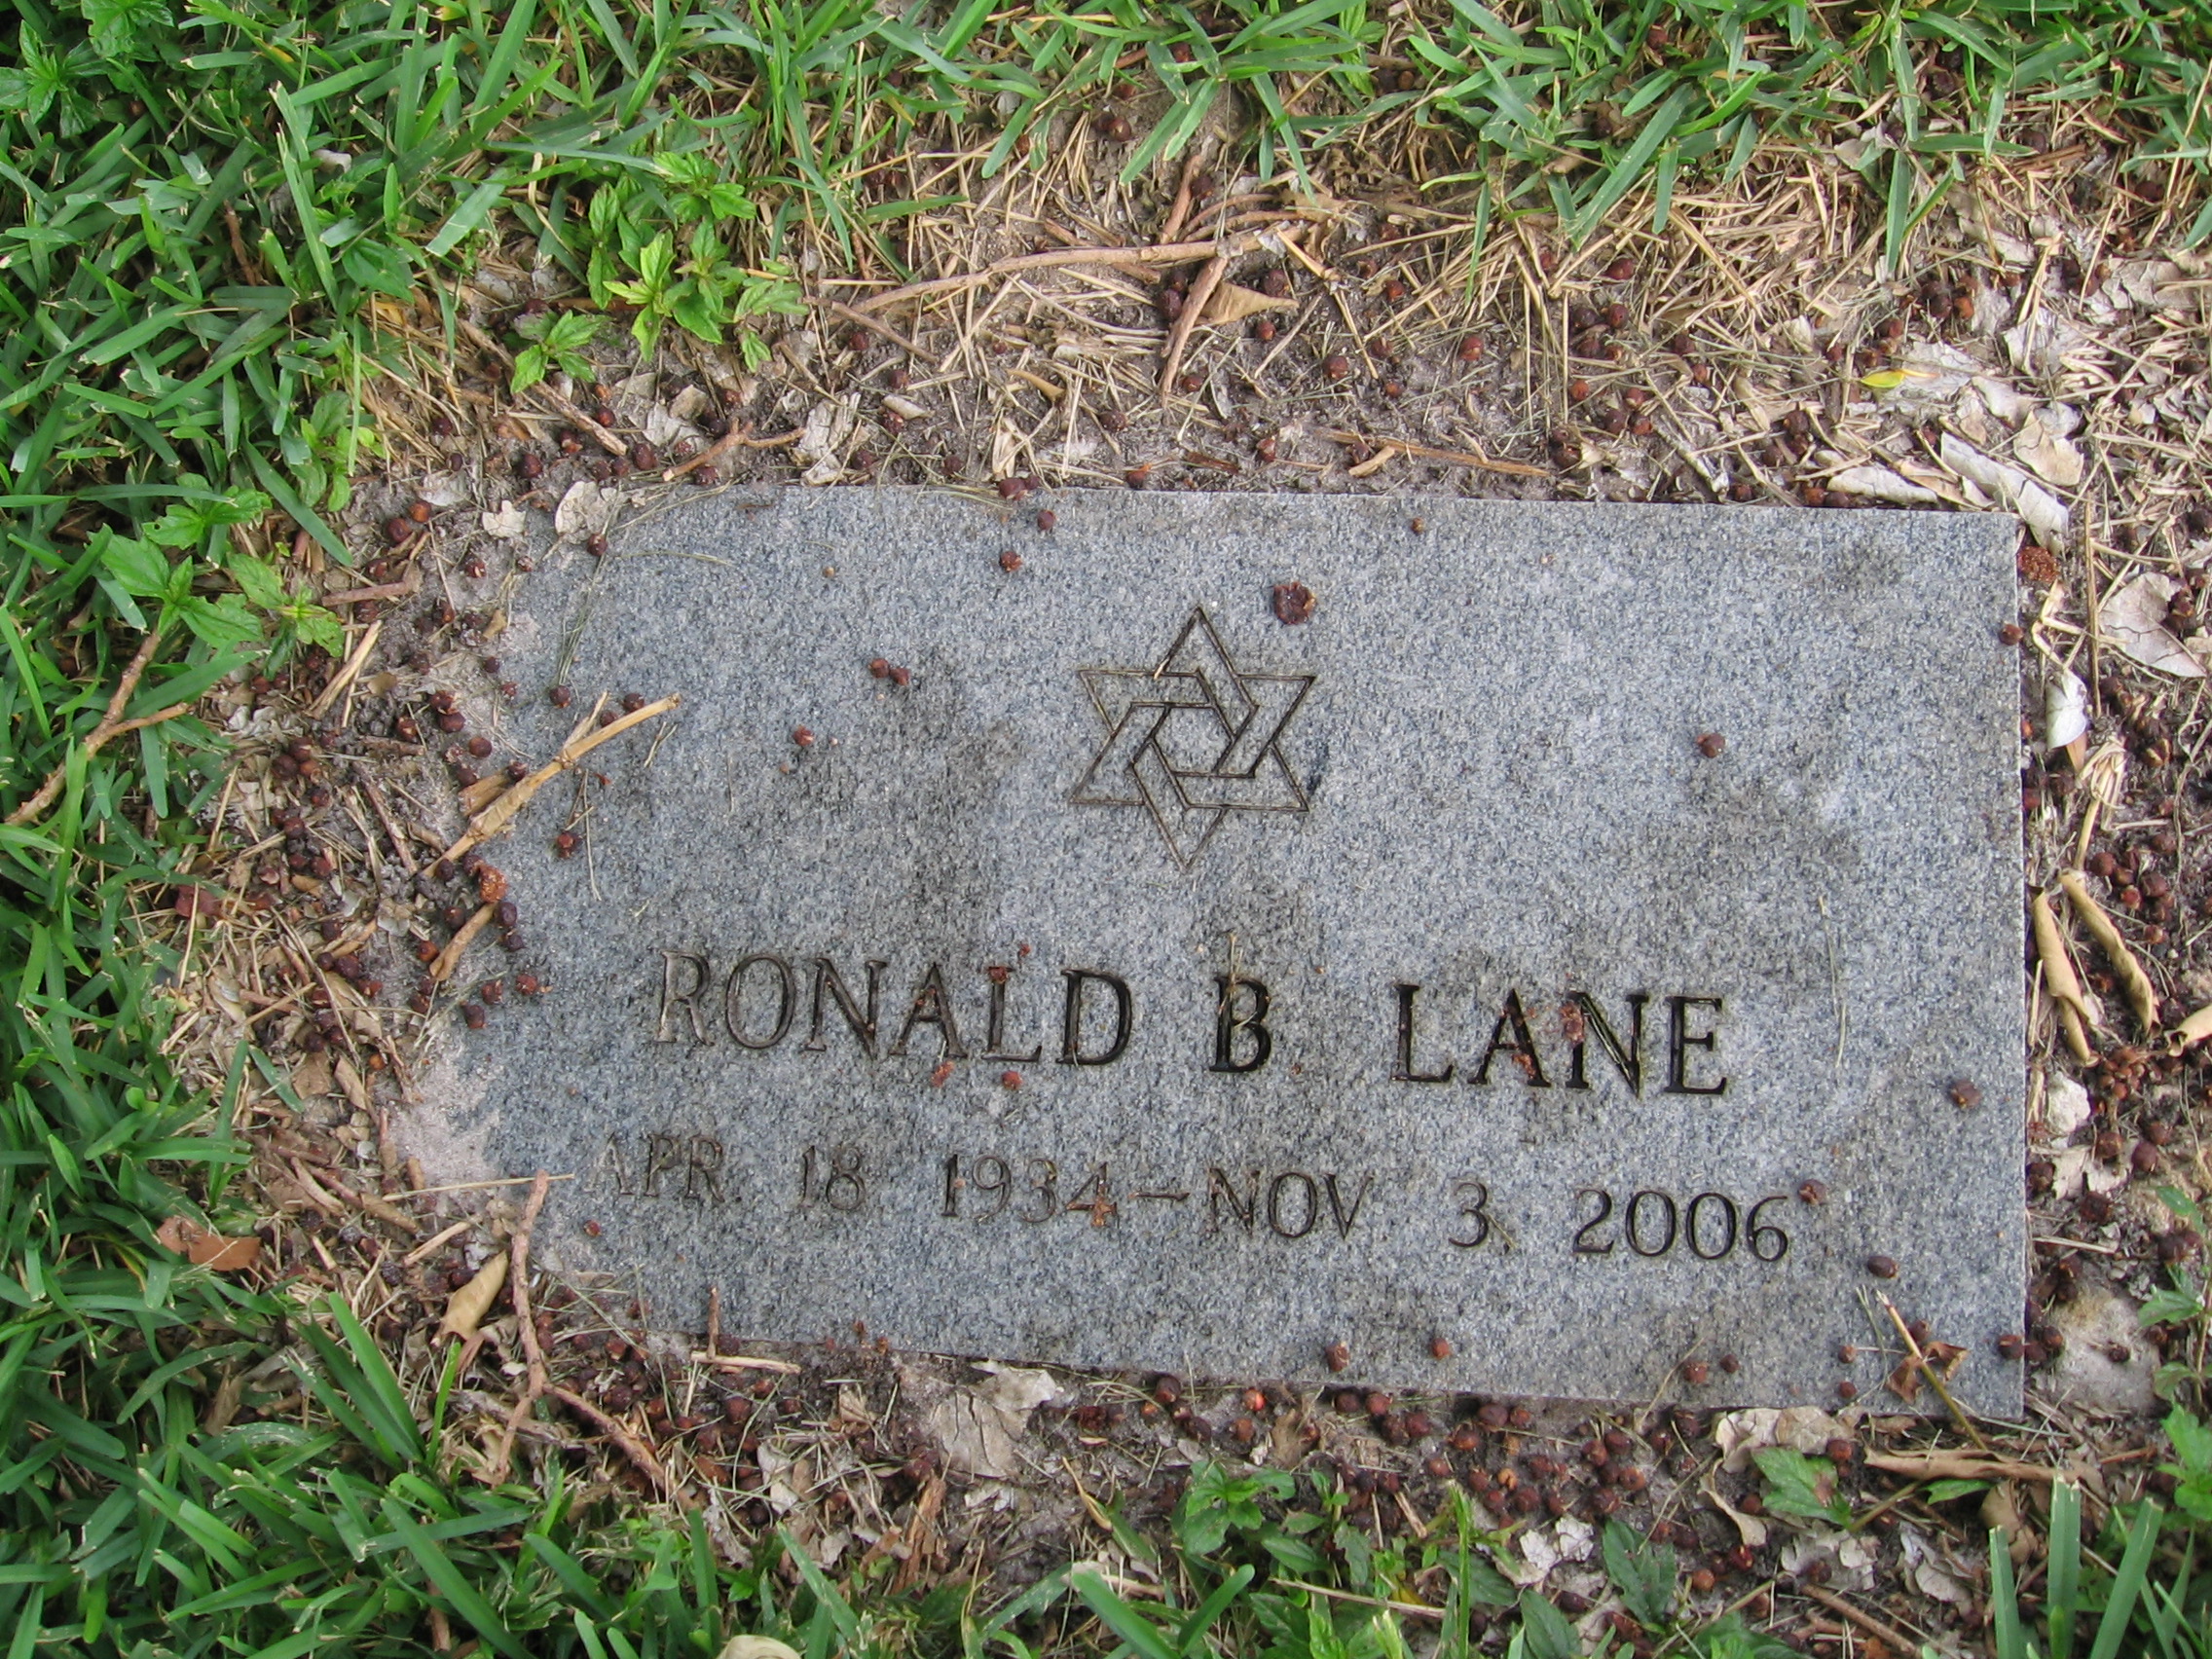 Ronald B Lane